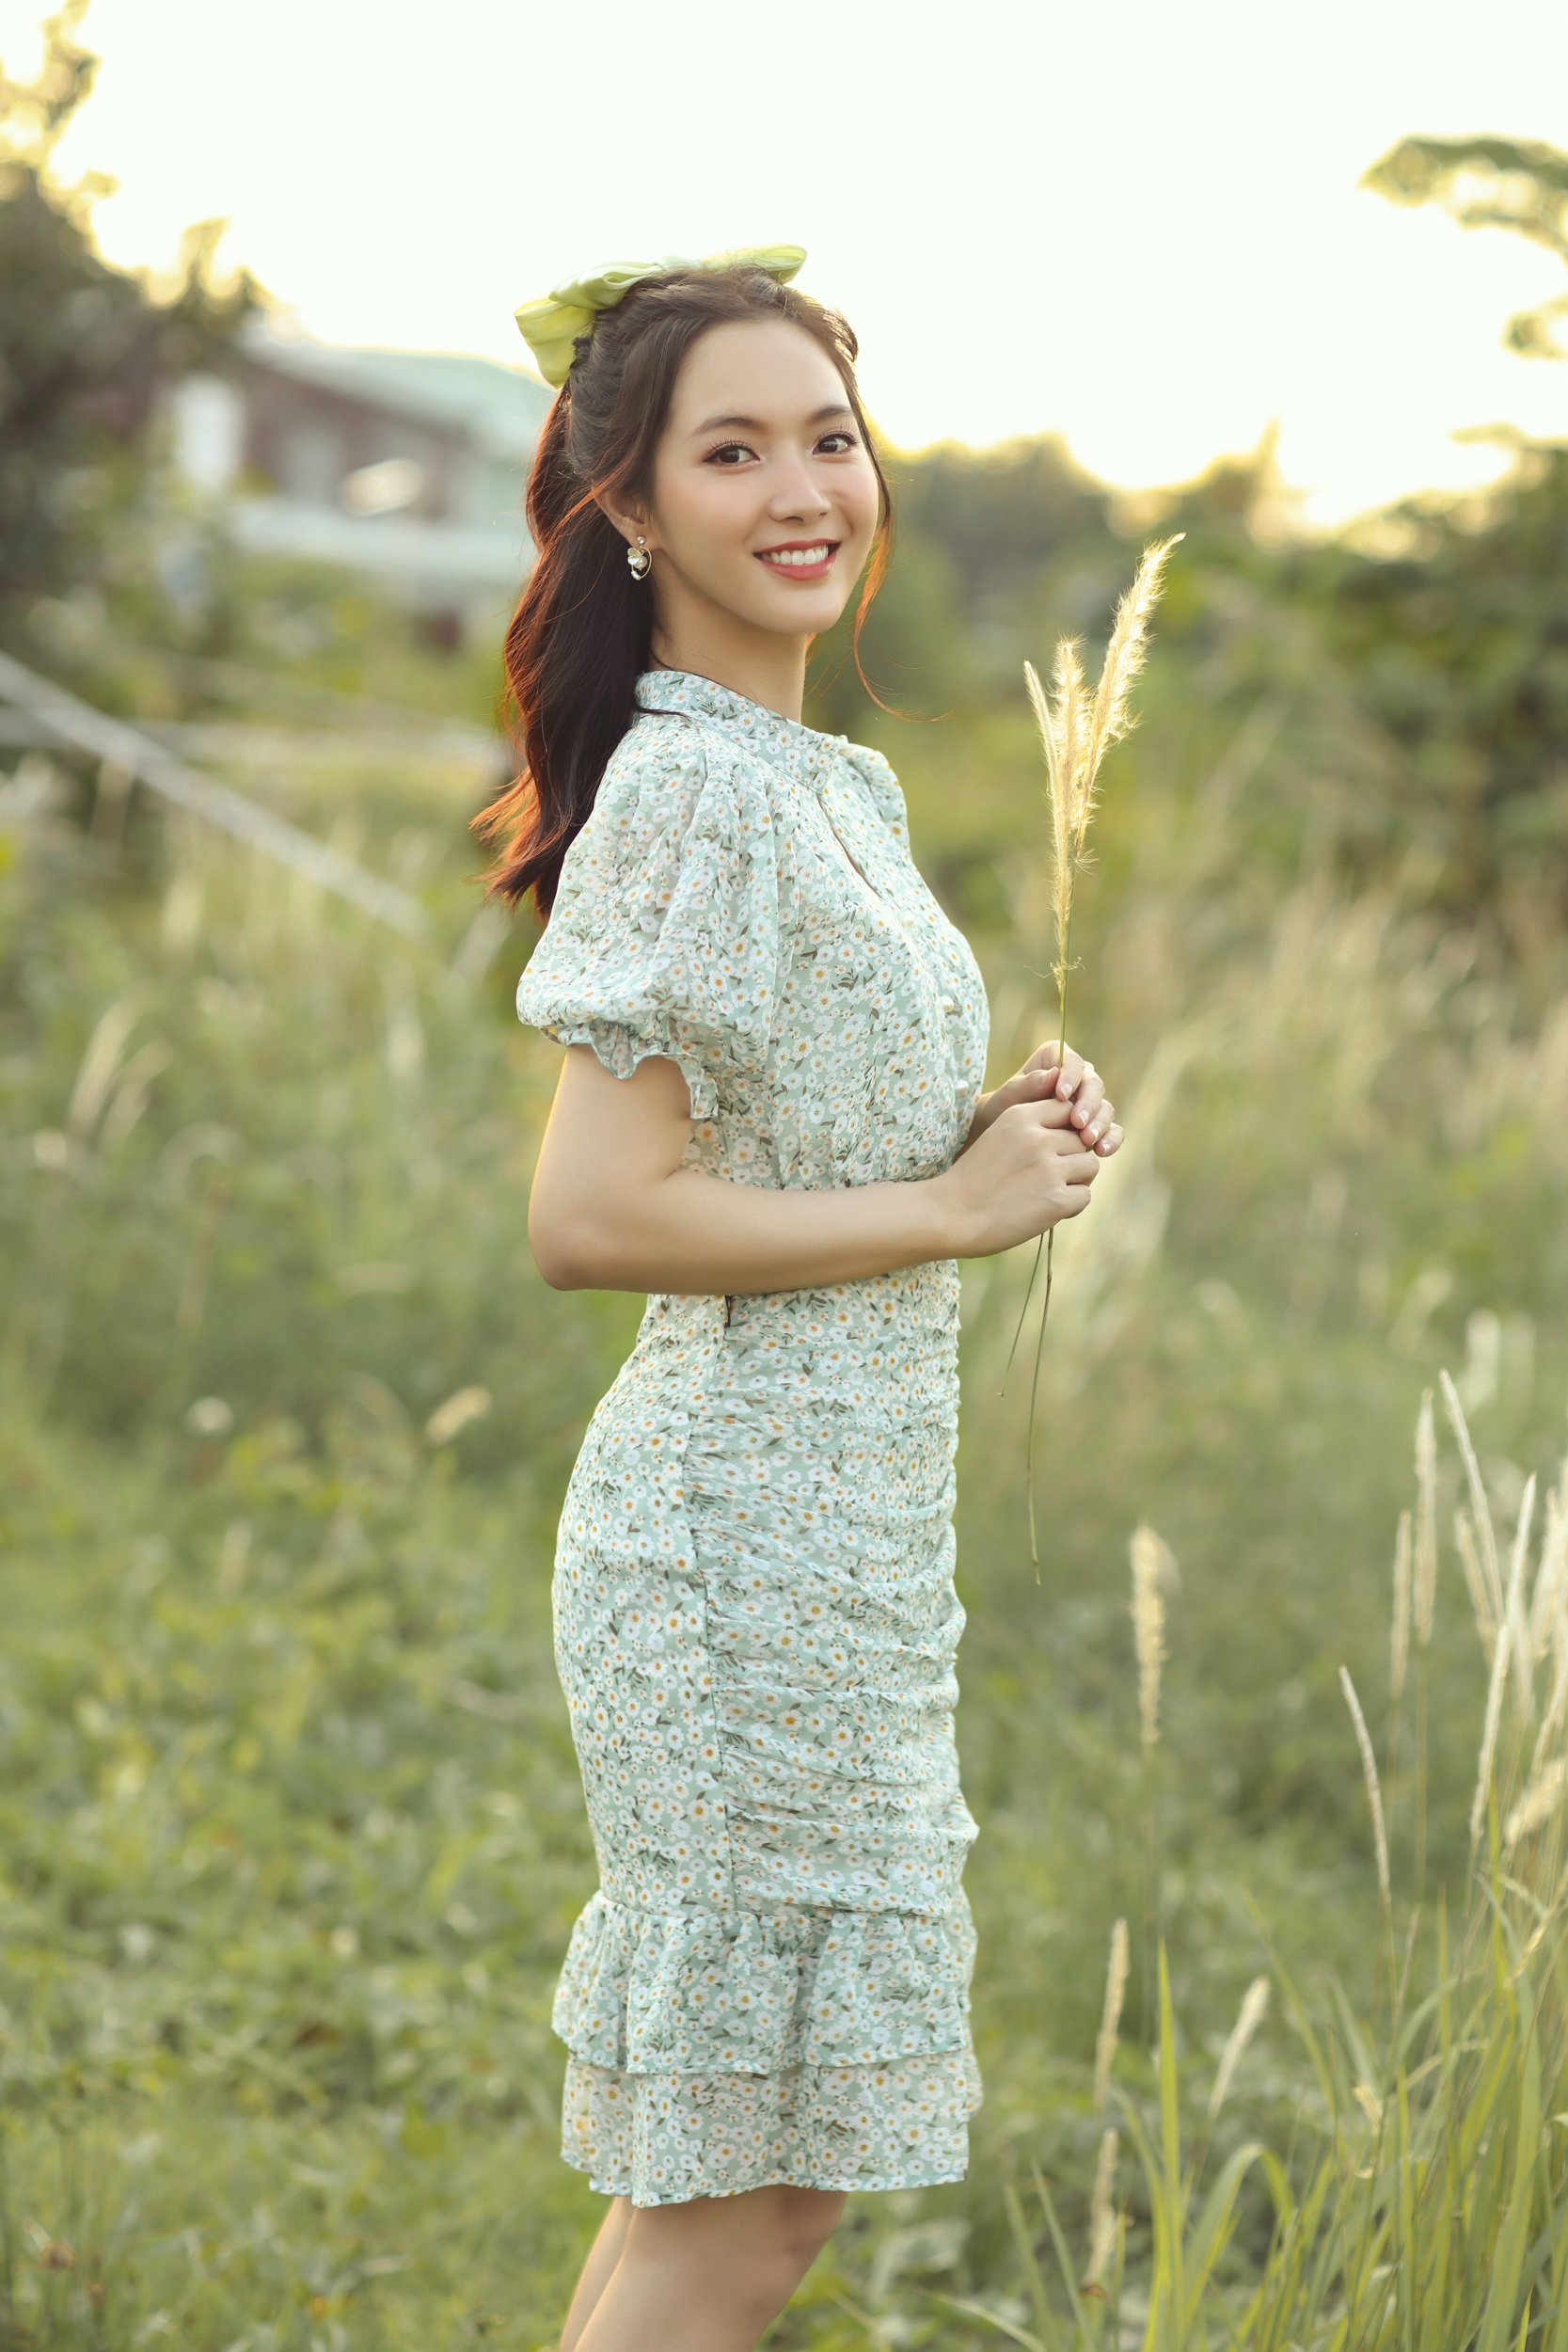 Jang Mi hóa ‘tiên nữ mùa hè’ trong bộ ảnh mới - ảnh 5